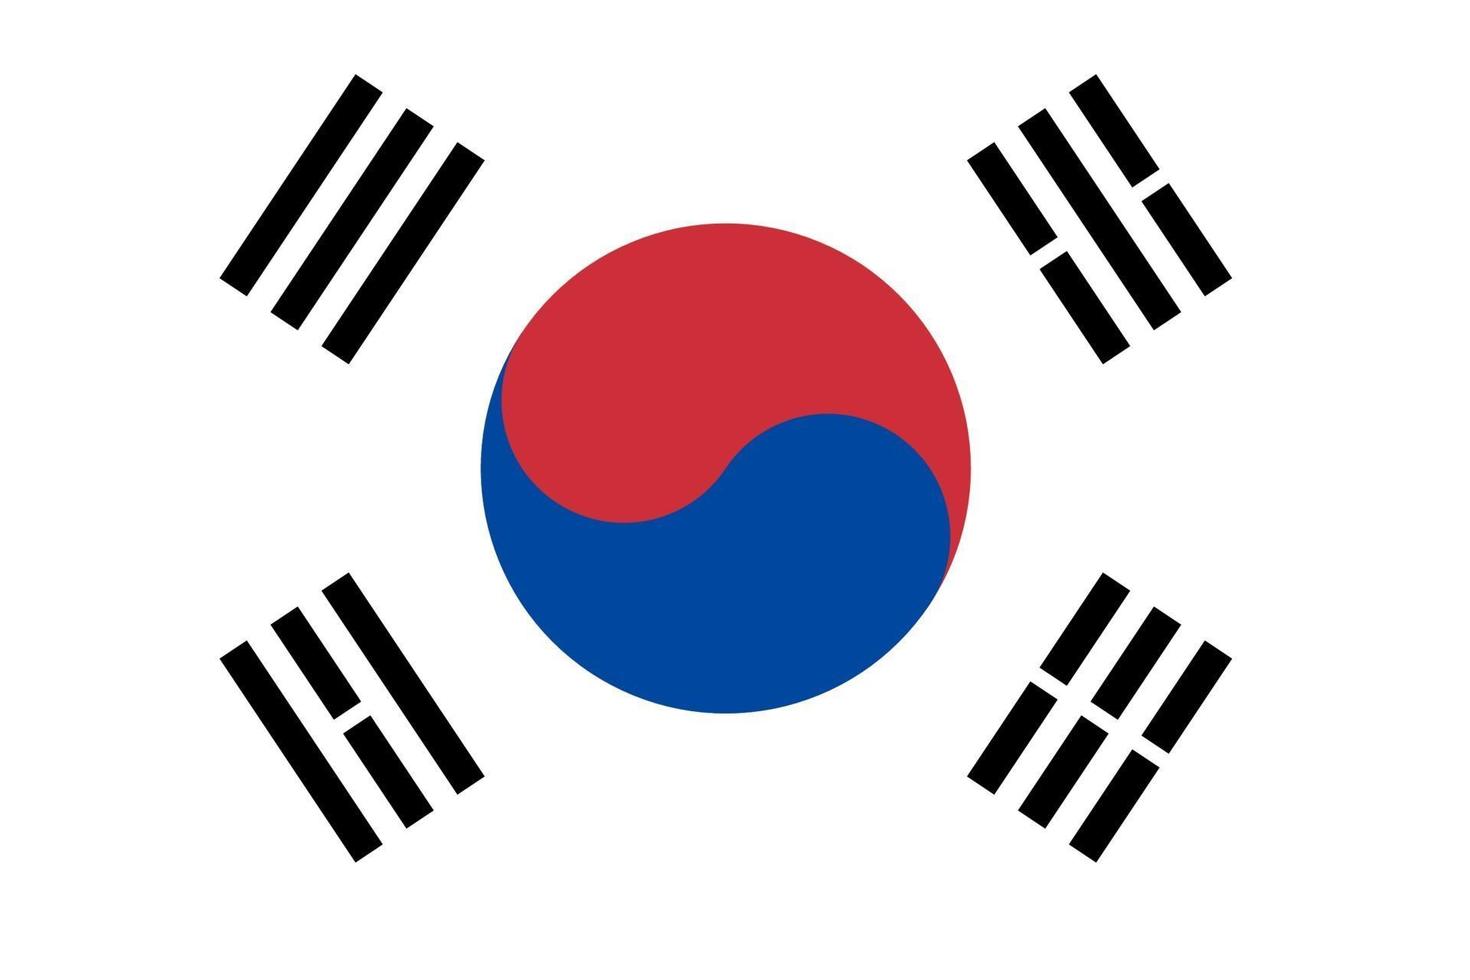 südkoreanische flagge von südkorea vektor